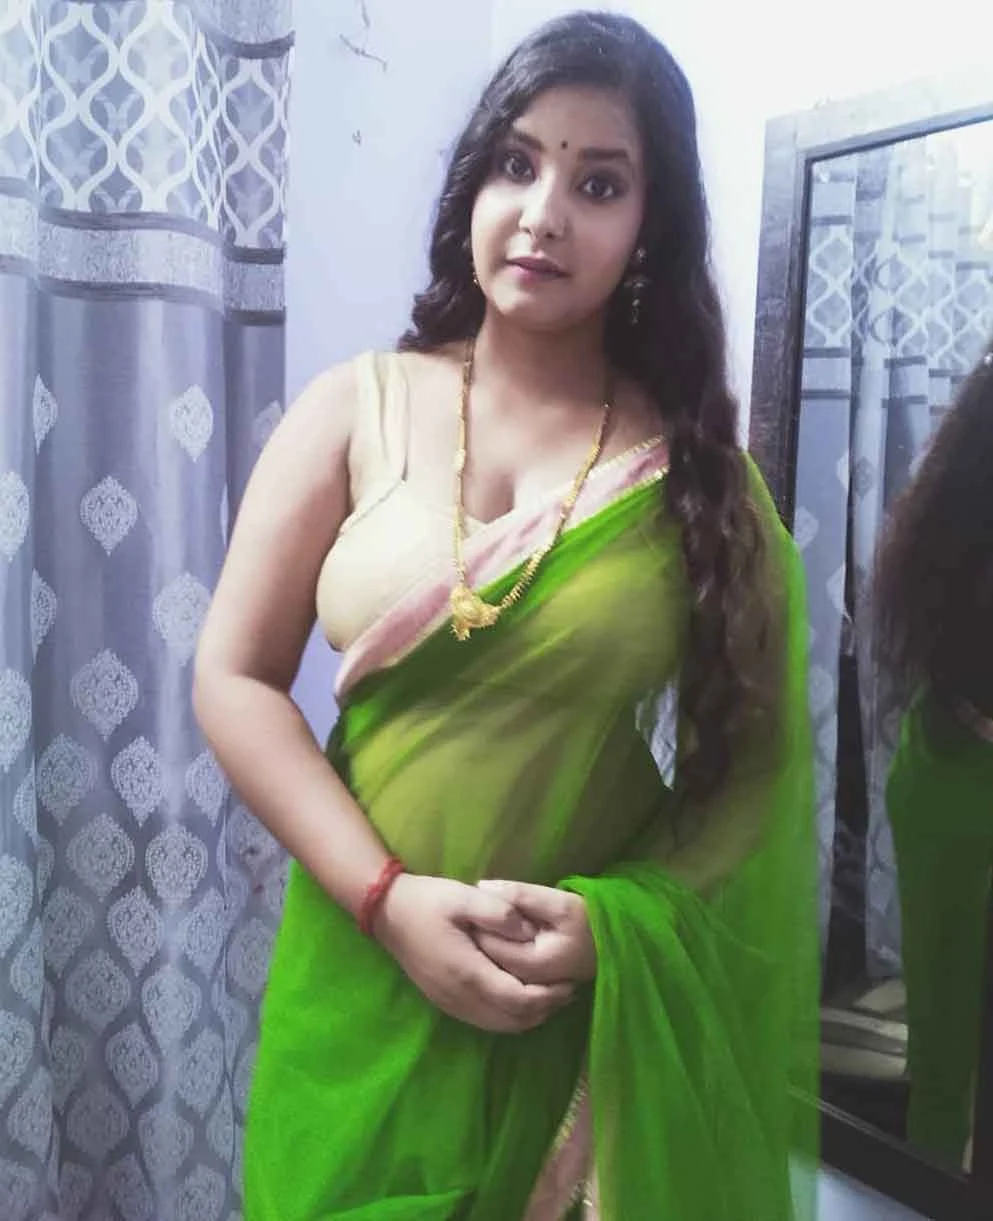 Ridhima Tiwari aka Natasha Rajeswari